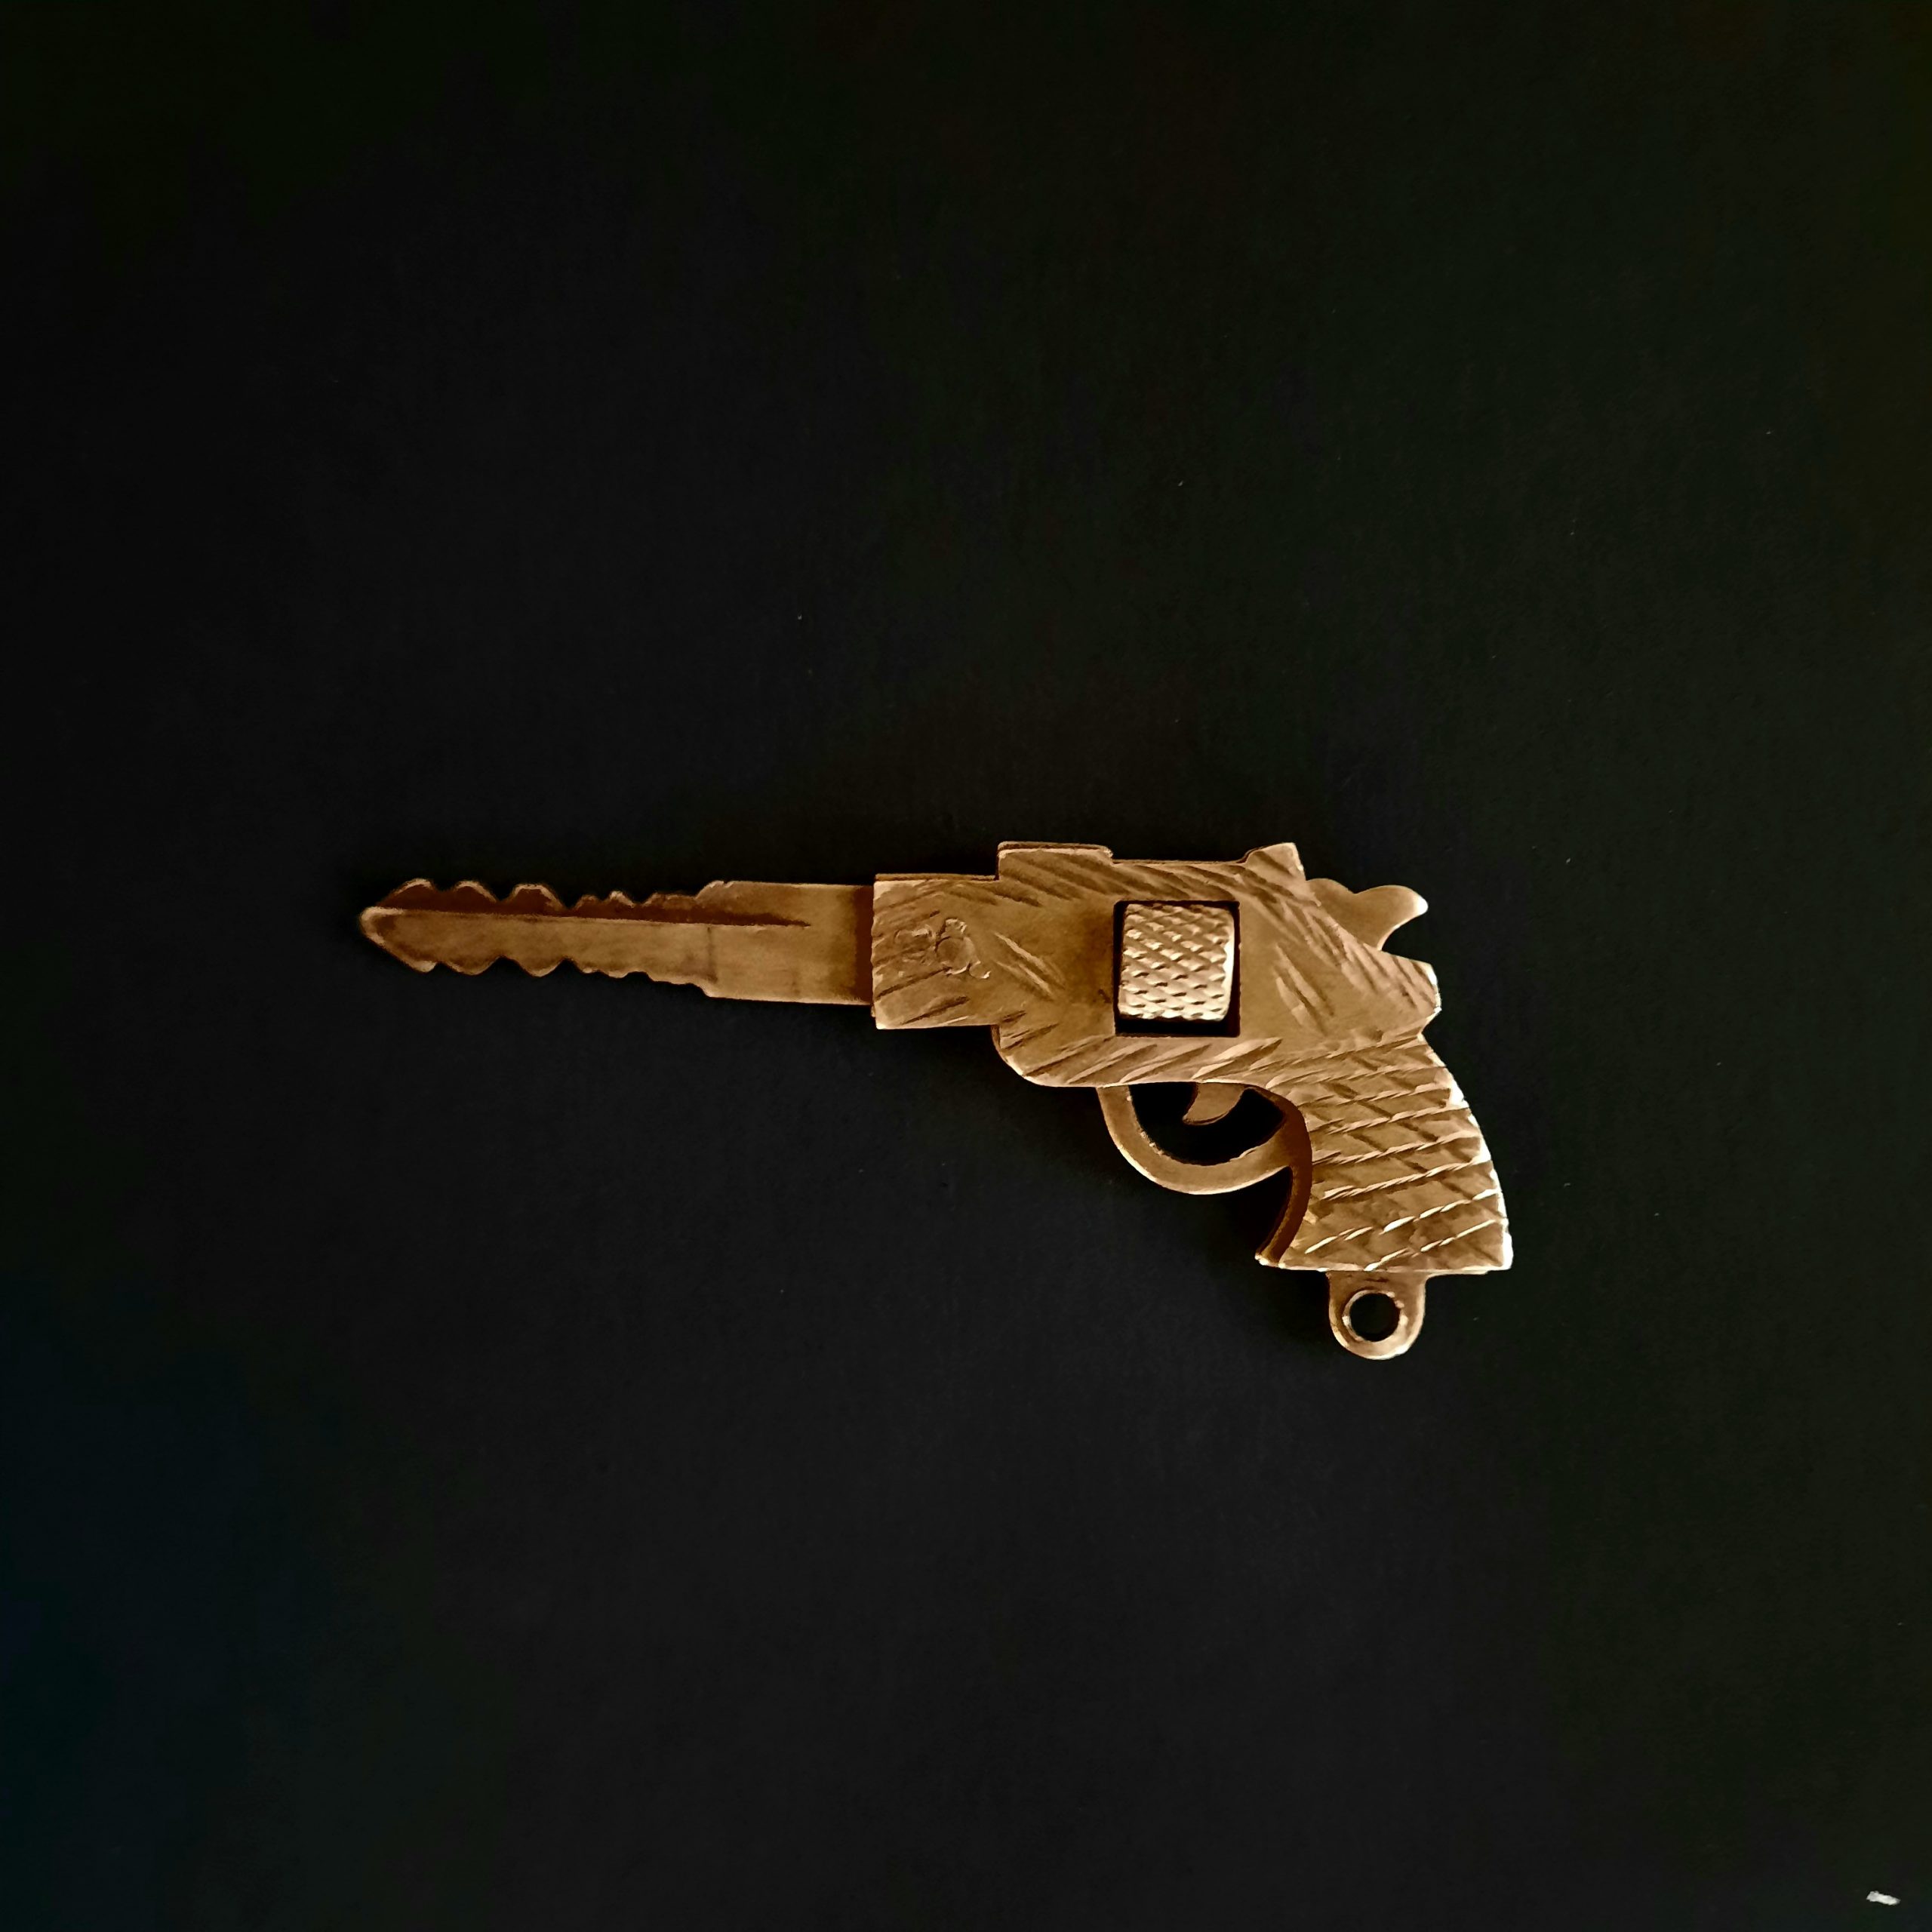 key in the shape of gun